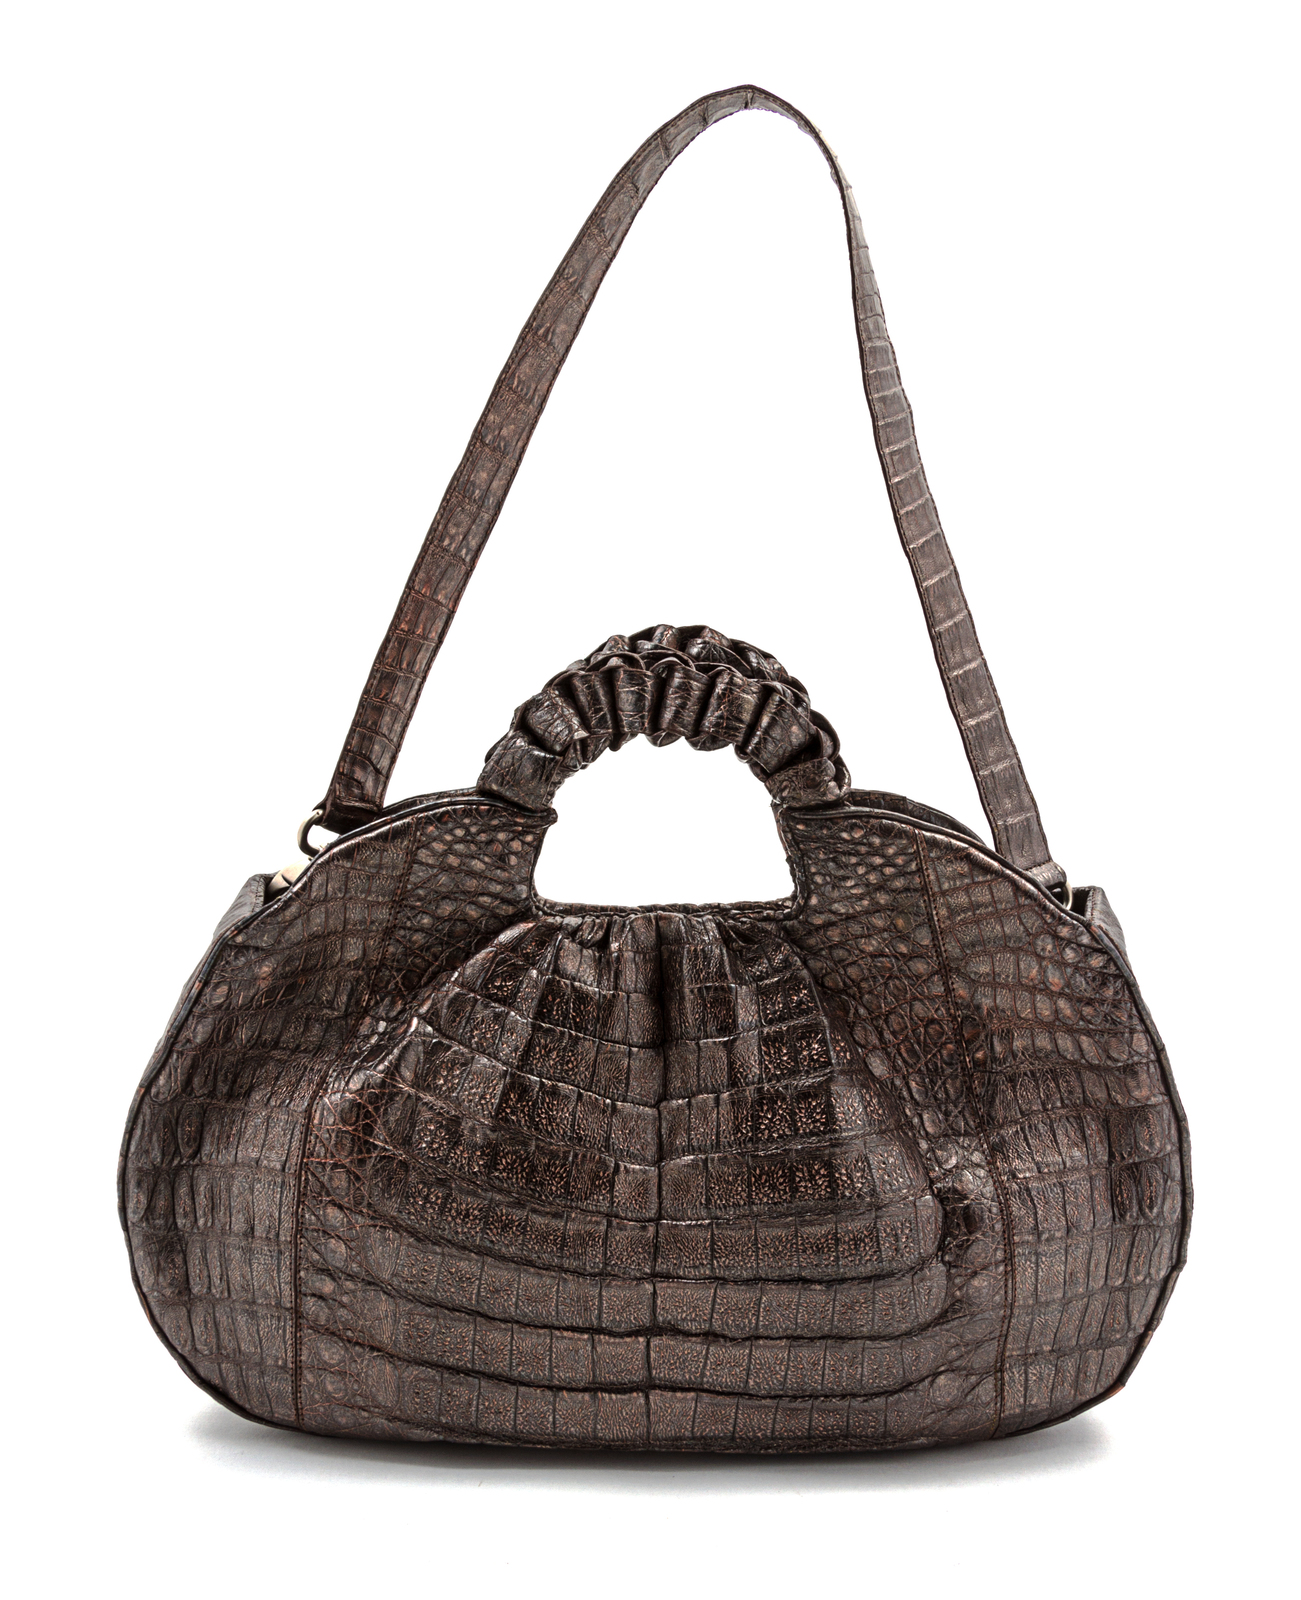 At Auction: Nancy Gonzalez Crocodile Leather Bag